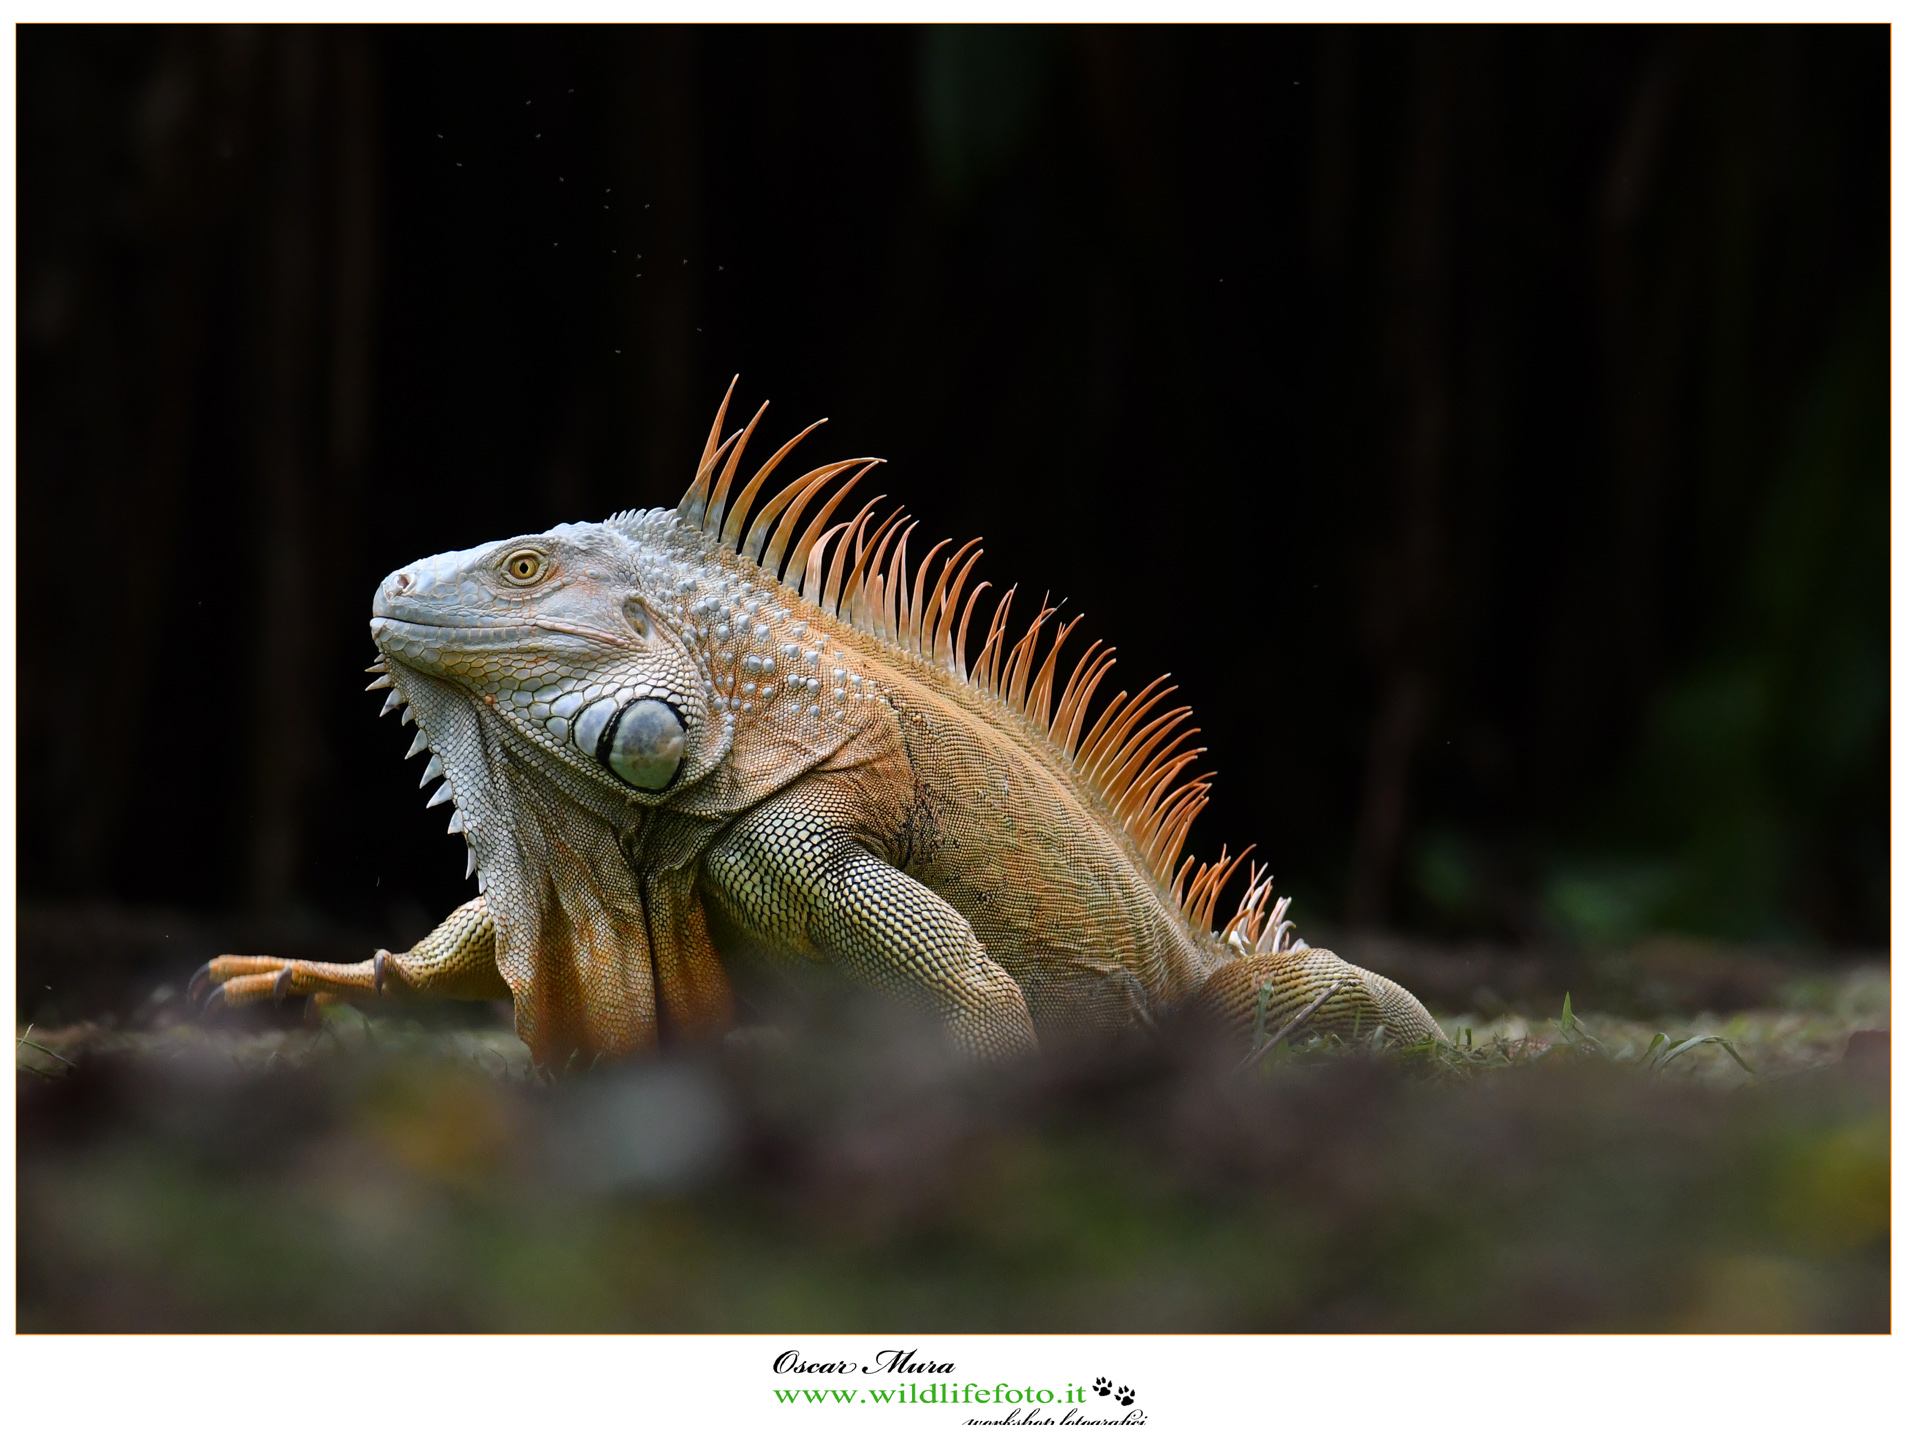 Dominant male Tree iguana www.wildlifefoto.it...